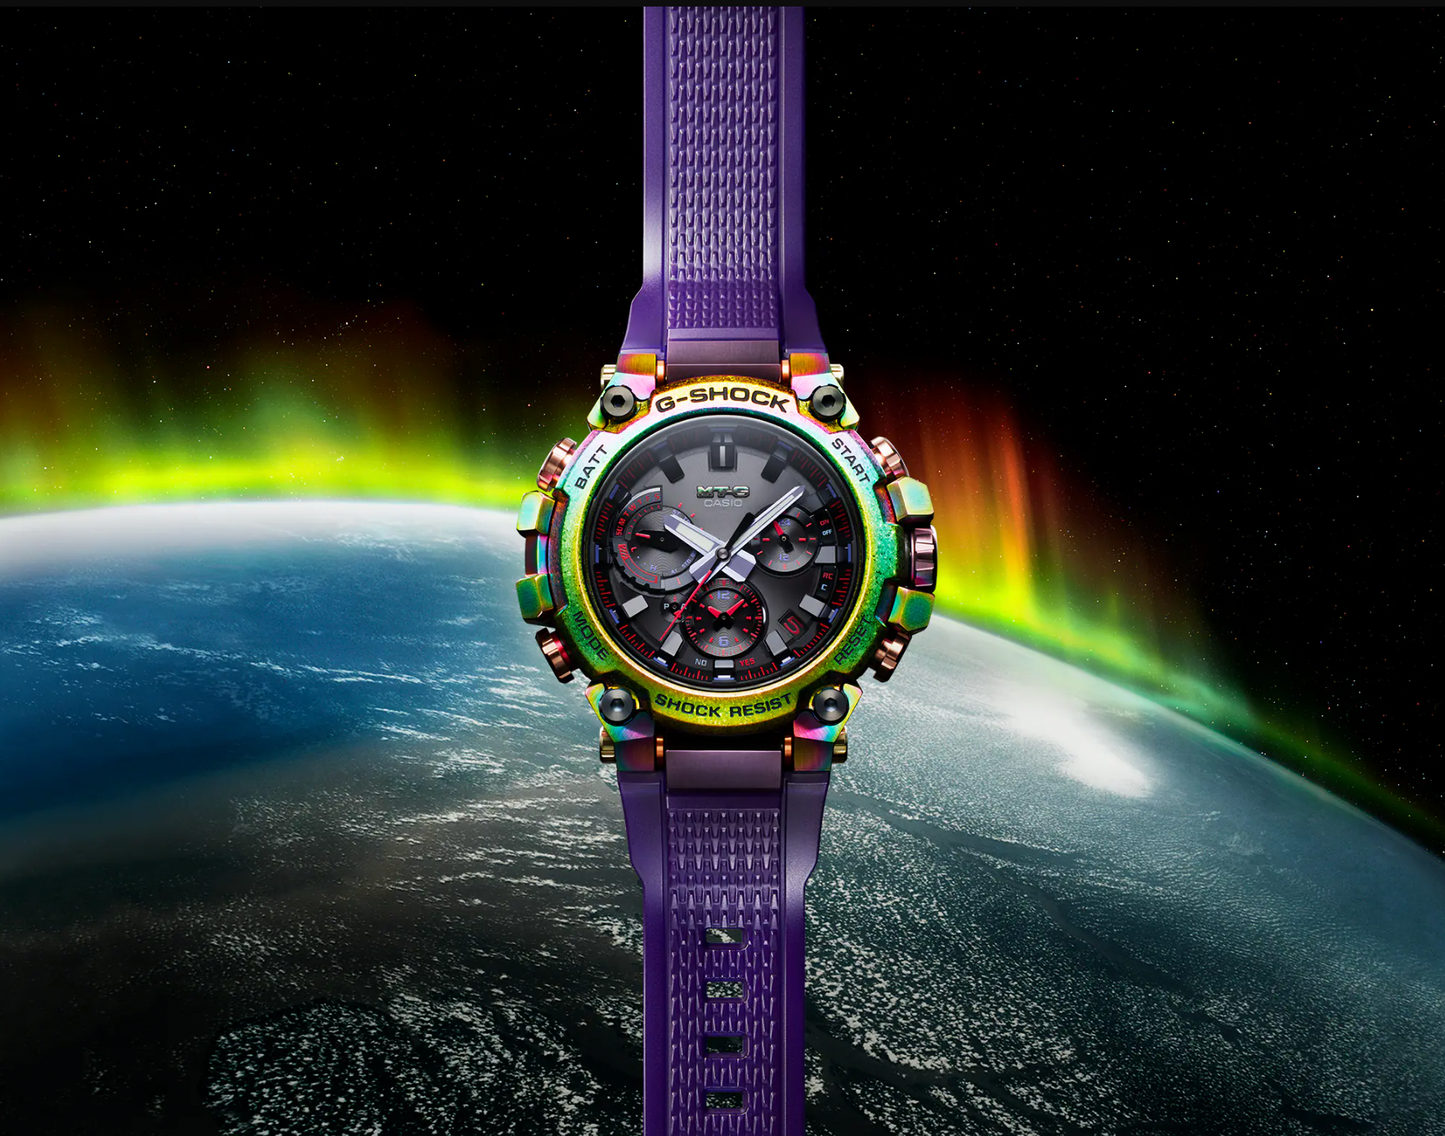 Casio G-Shock MTGB3000 Series Watch